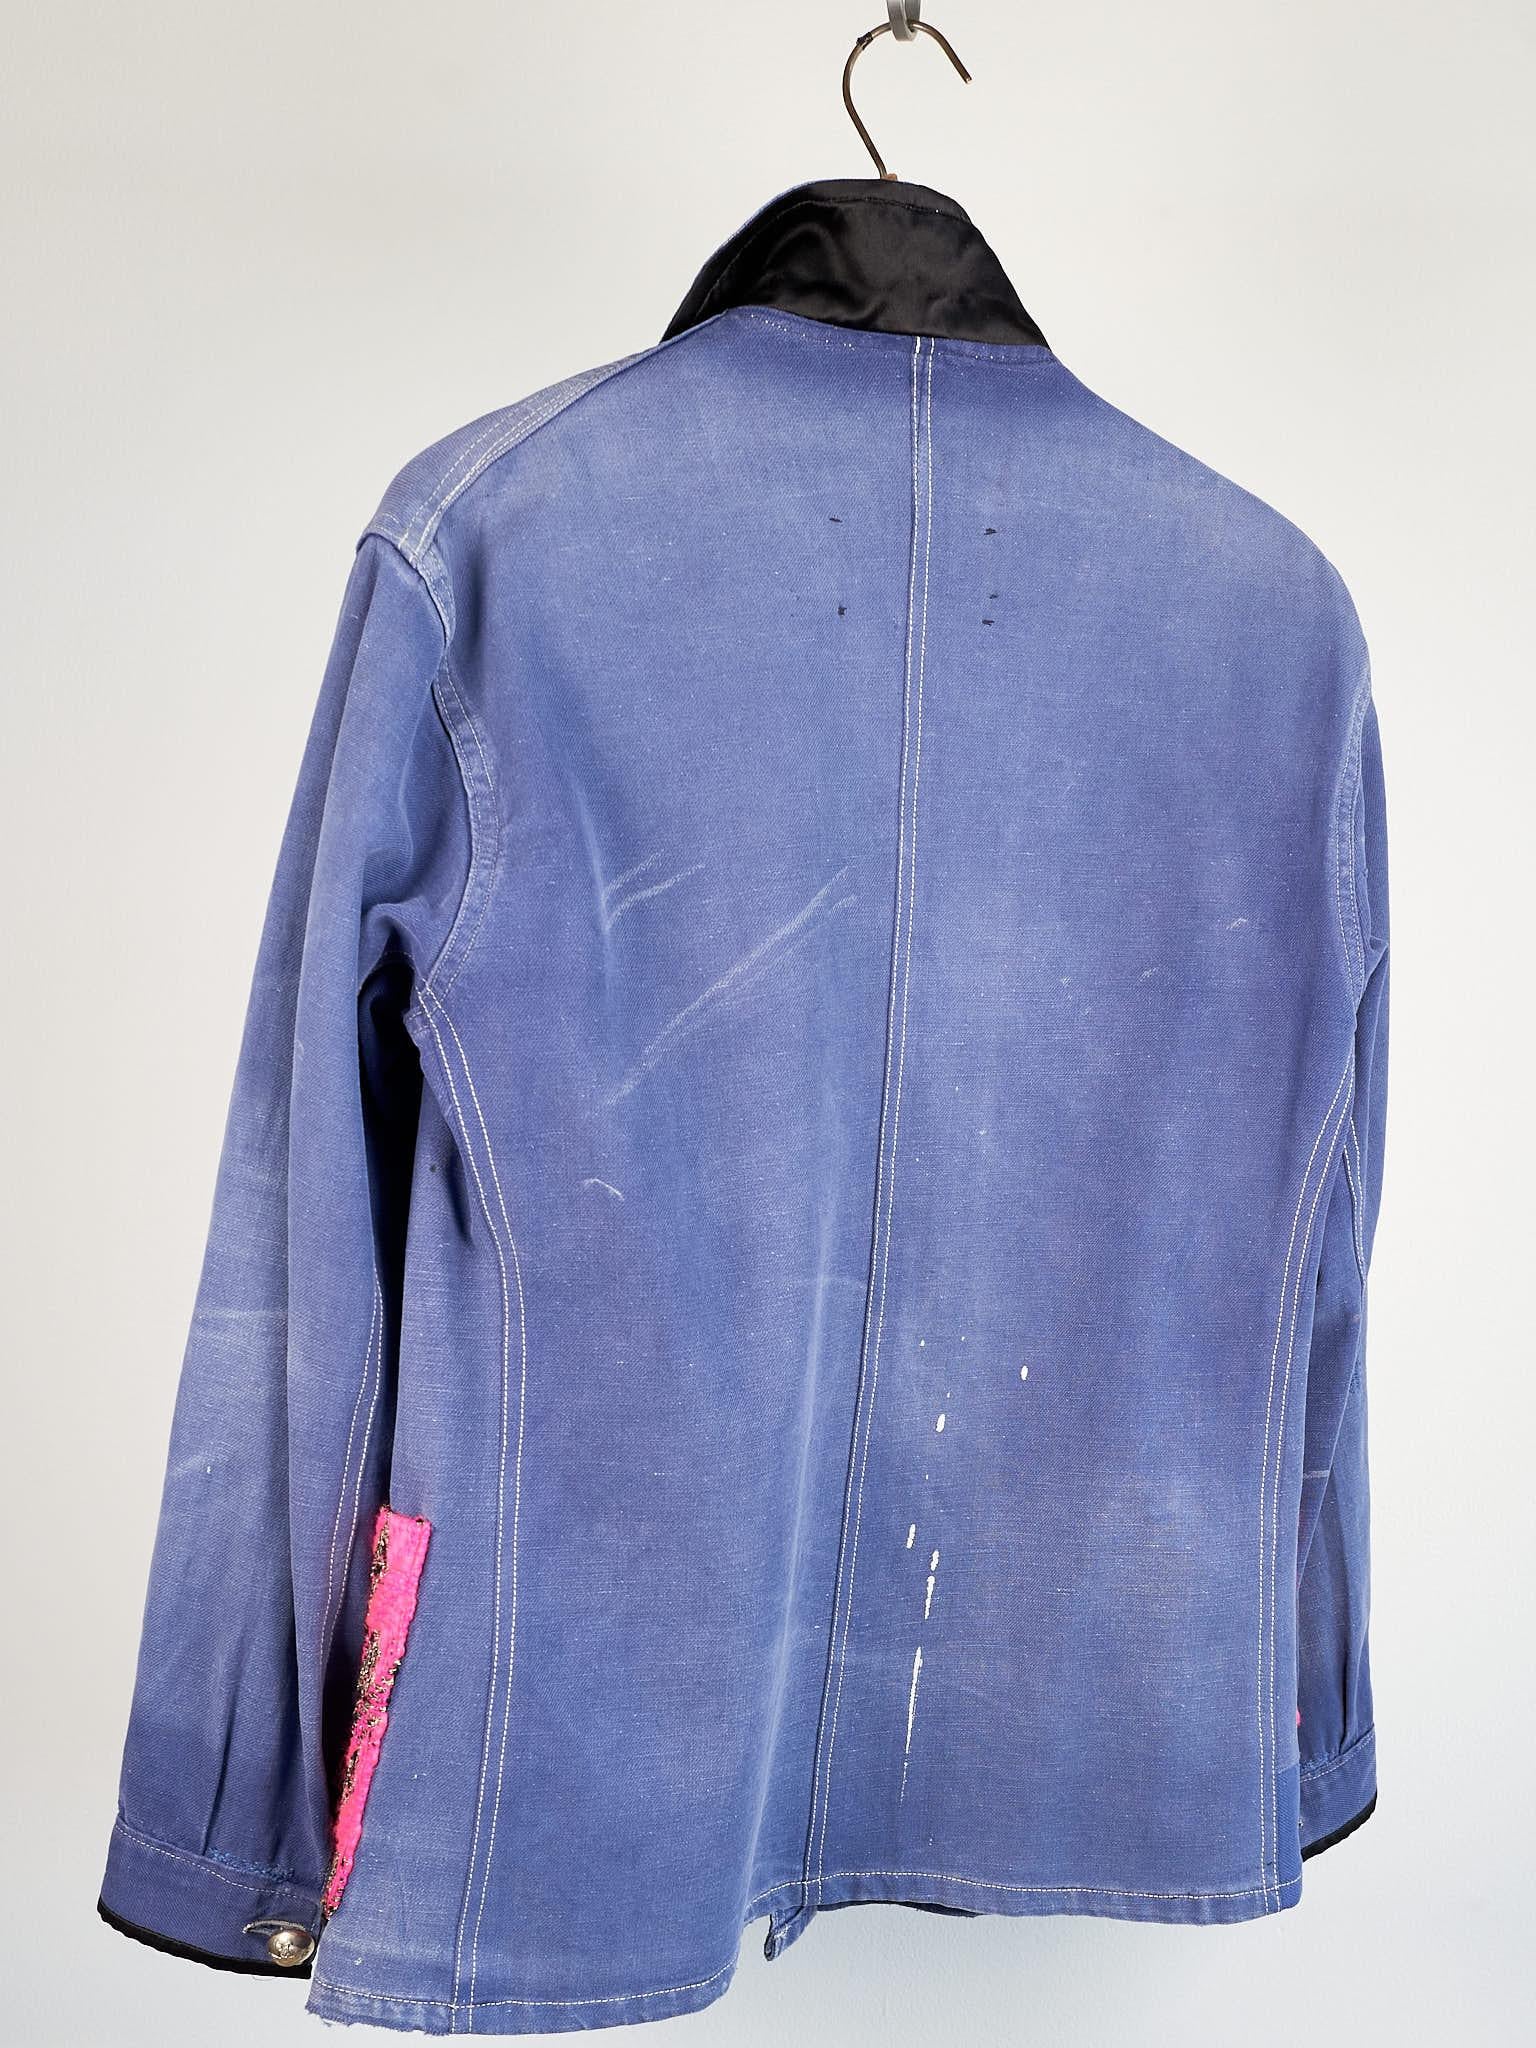 Repurposed Vintage Jacket French Blue Work Wear Neon Pink Tweed Small 3